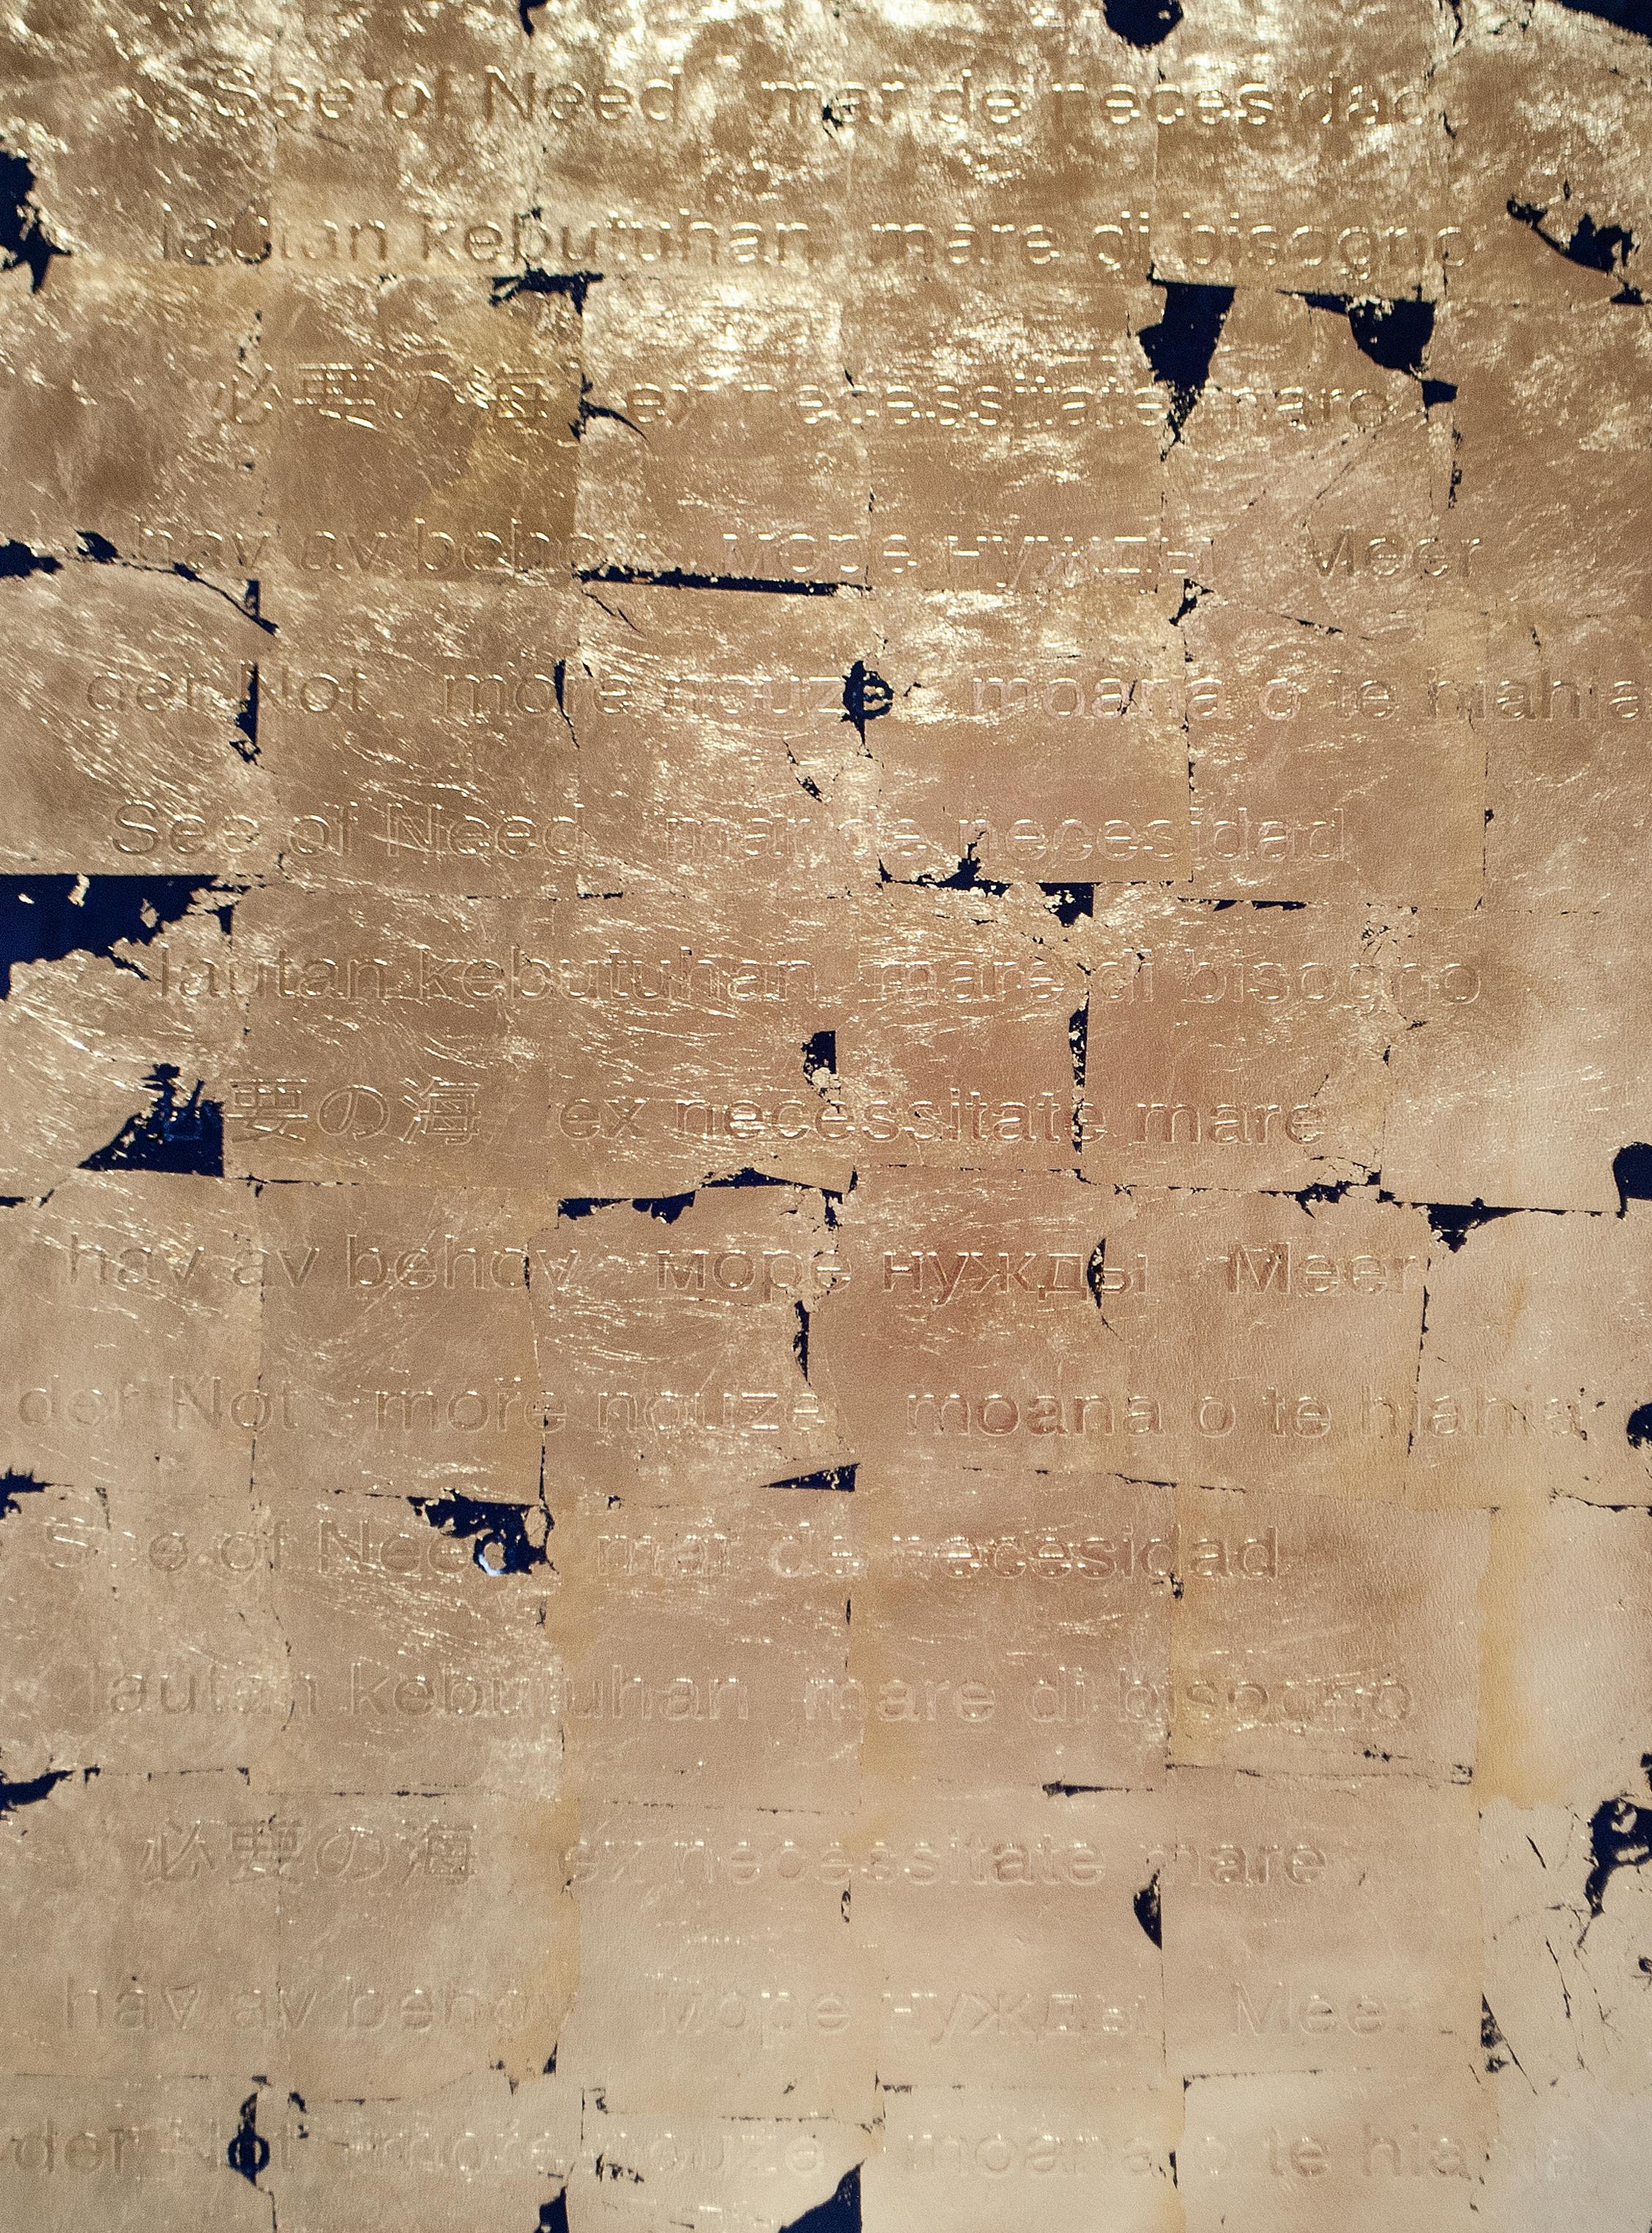 "Sea of Needs 03" Peinture abstraite 39" x 29,5" pouces de Patricio Gonzalez

Huile et feuilles d'or sur papier

Extrait de la série "À la recherche du bonheur 

À LA RECHERCHE DU BONHEUR
Comme "el dorado", une construction culturelle, un mythe, la